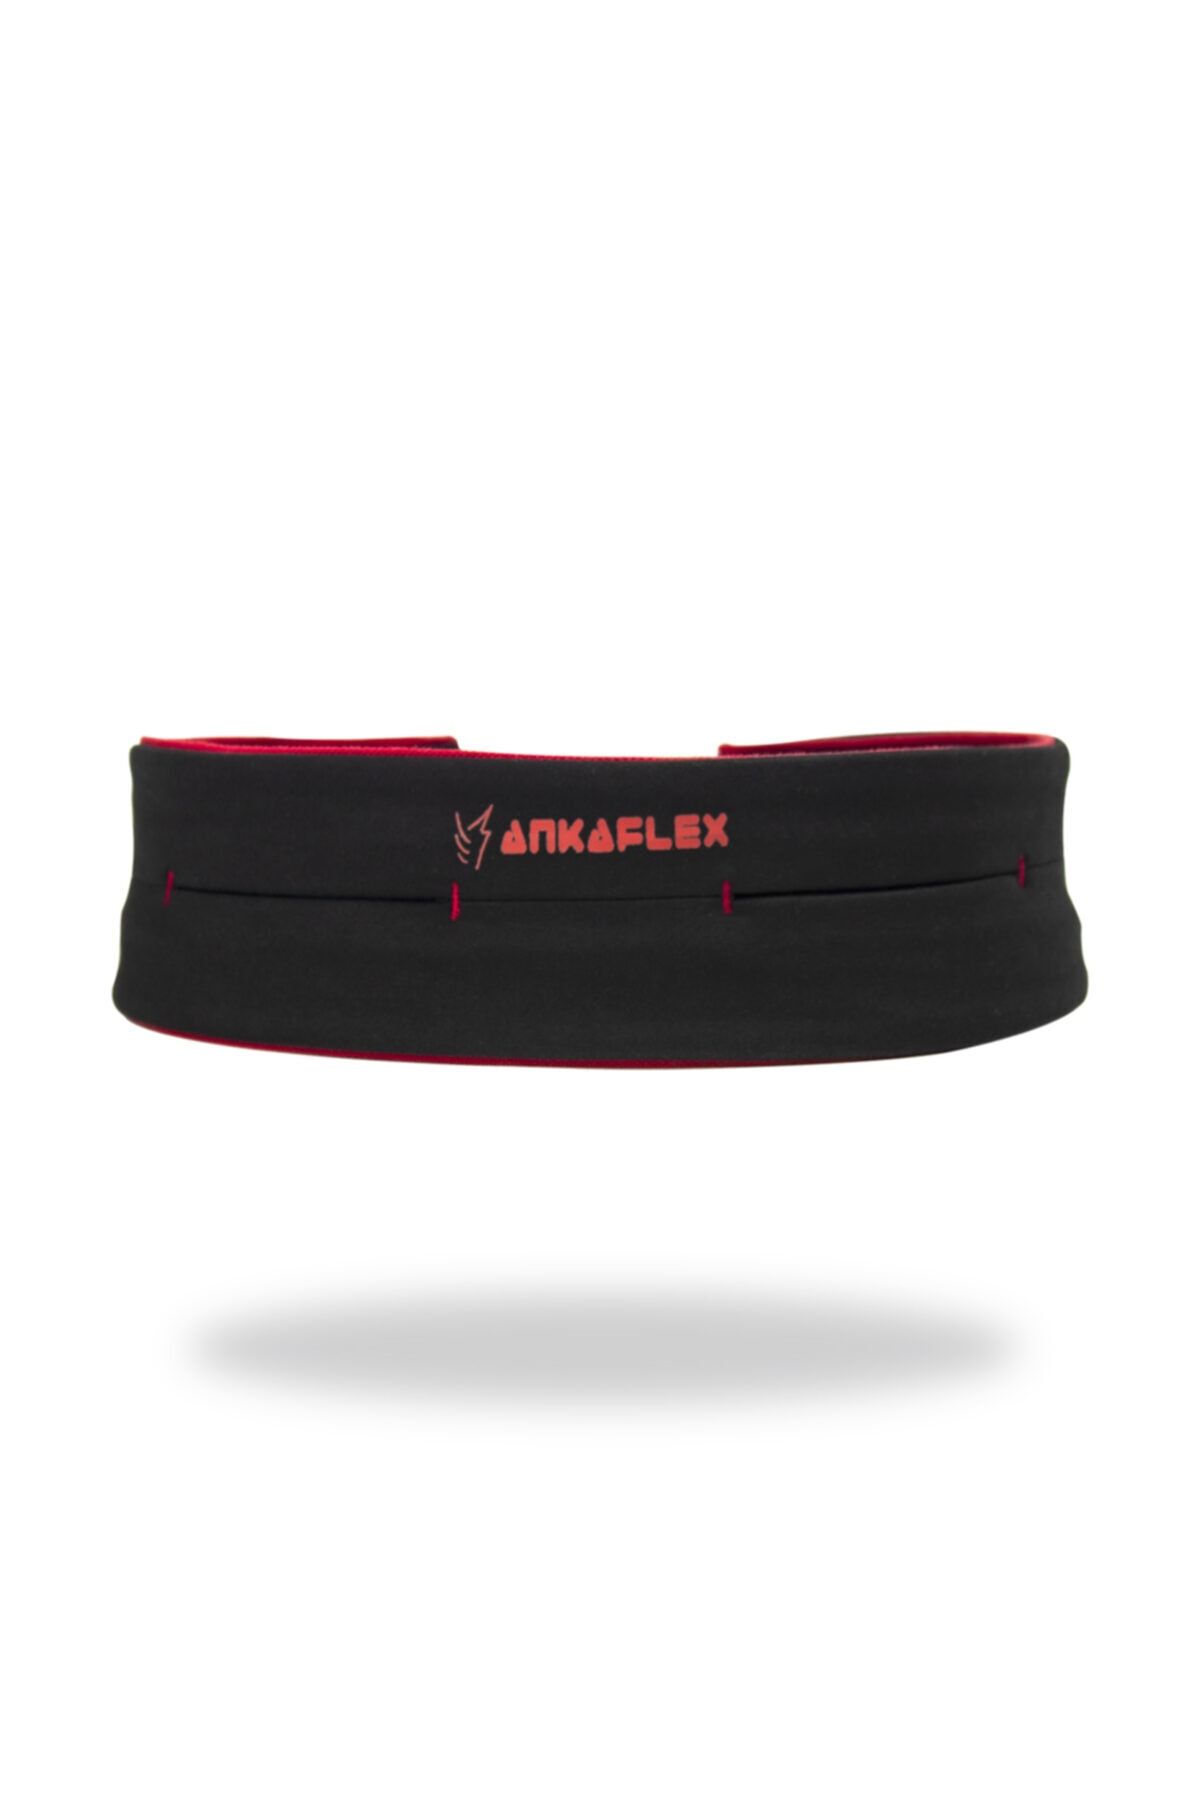 Ankaflex Unisex Kırmızı Spor  Bel Taşıyıcı Çanta